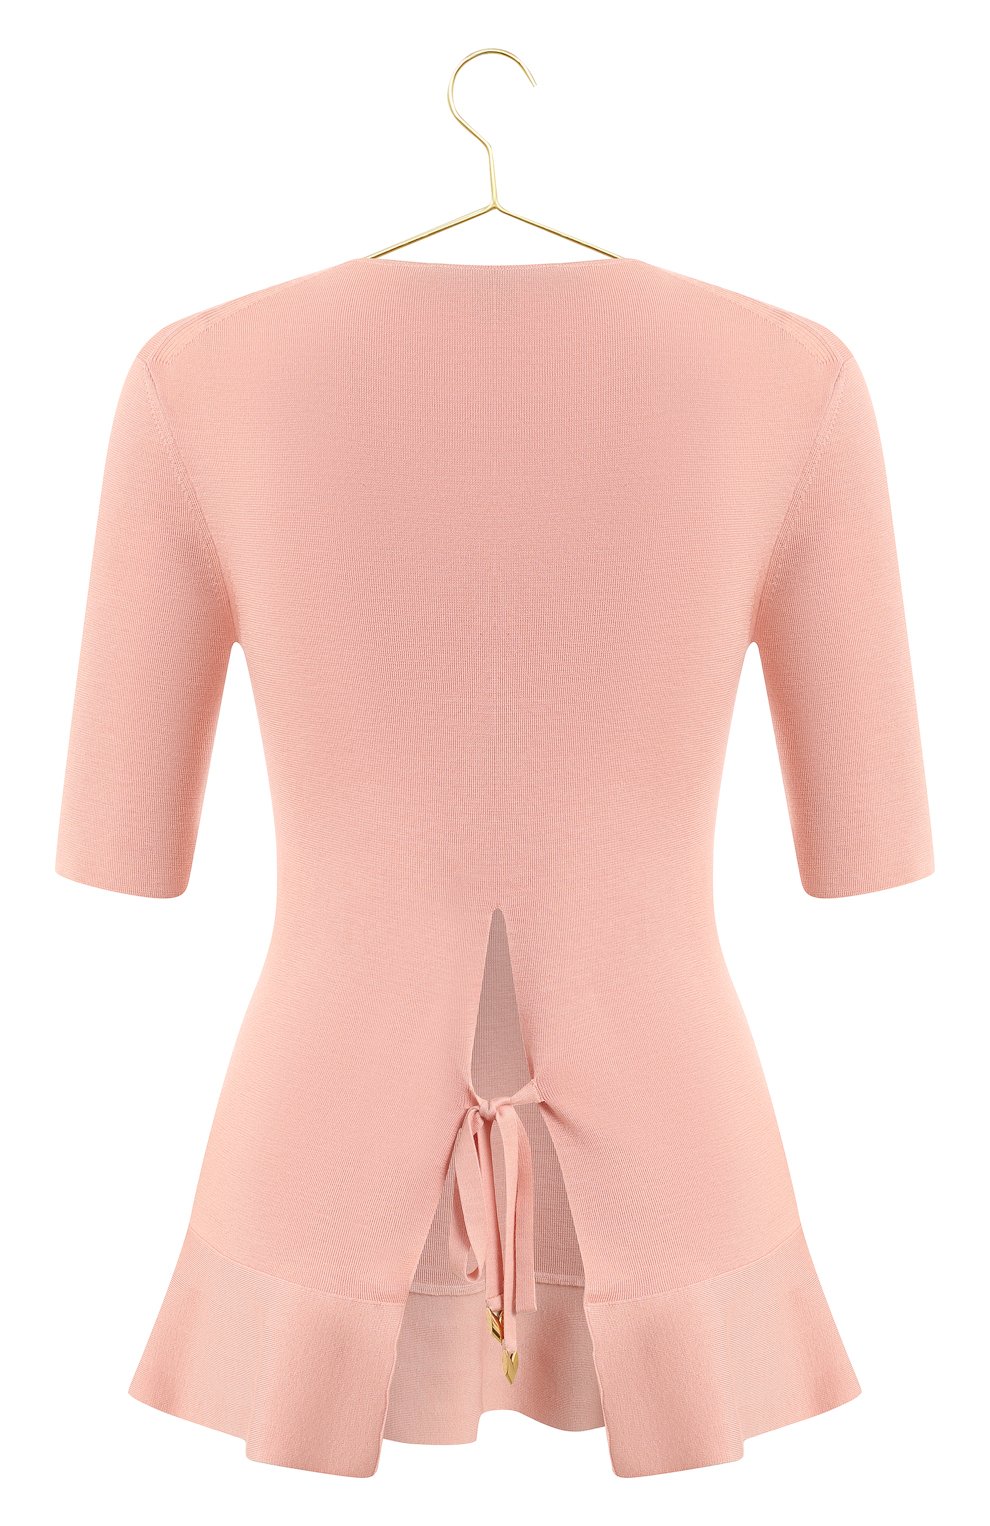 Топ из шерсти и кашемира | Louis Vuitton | Розовый - 2